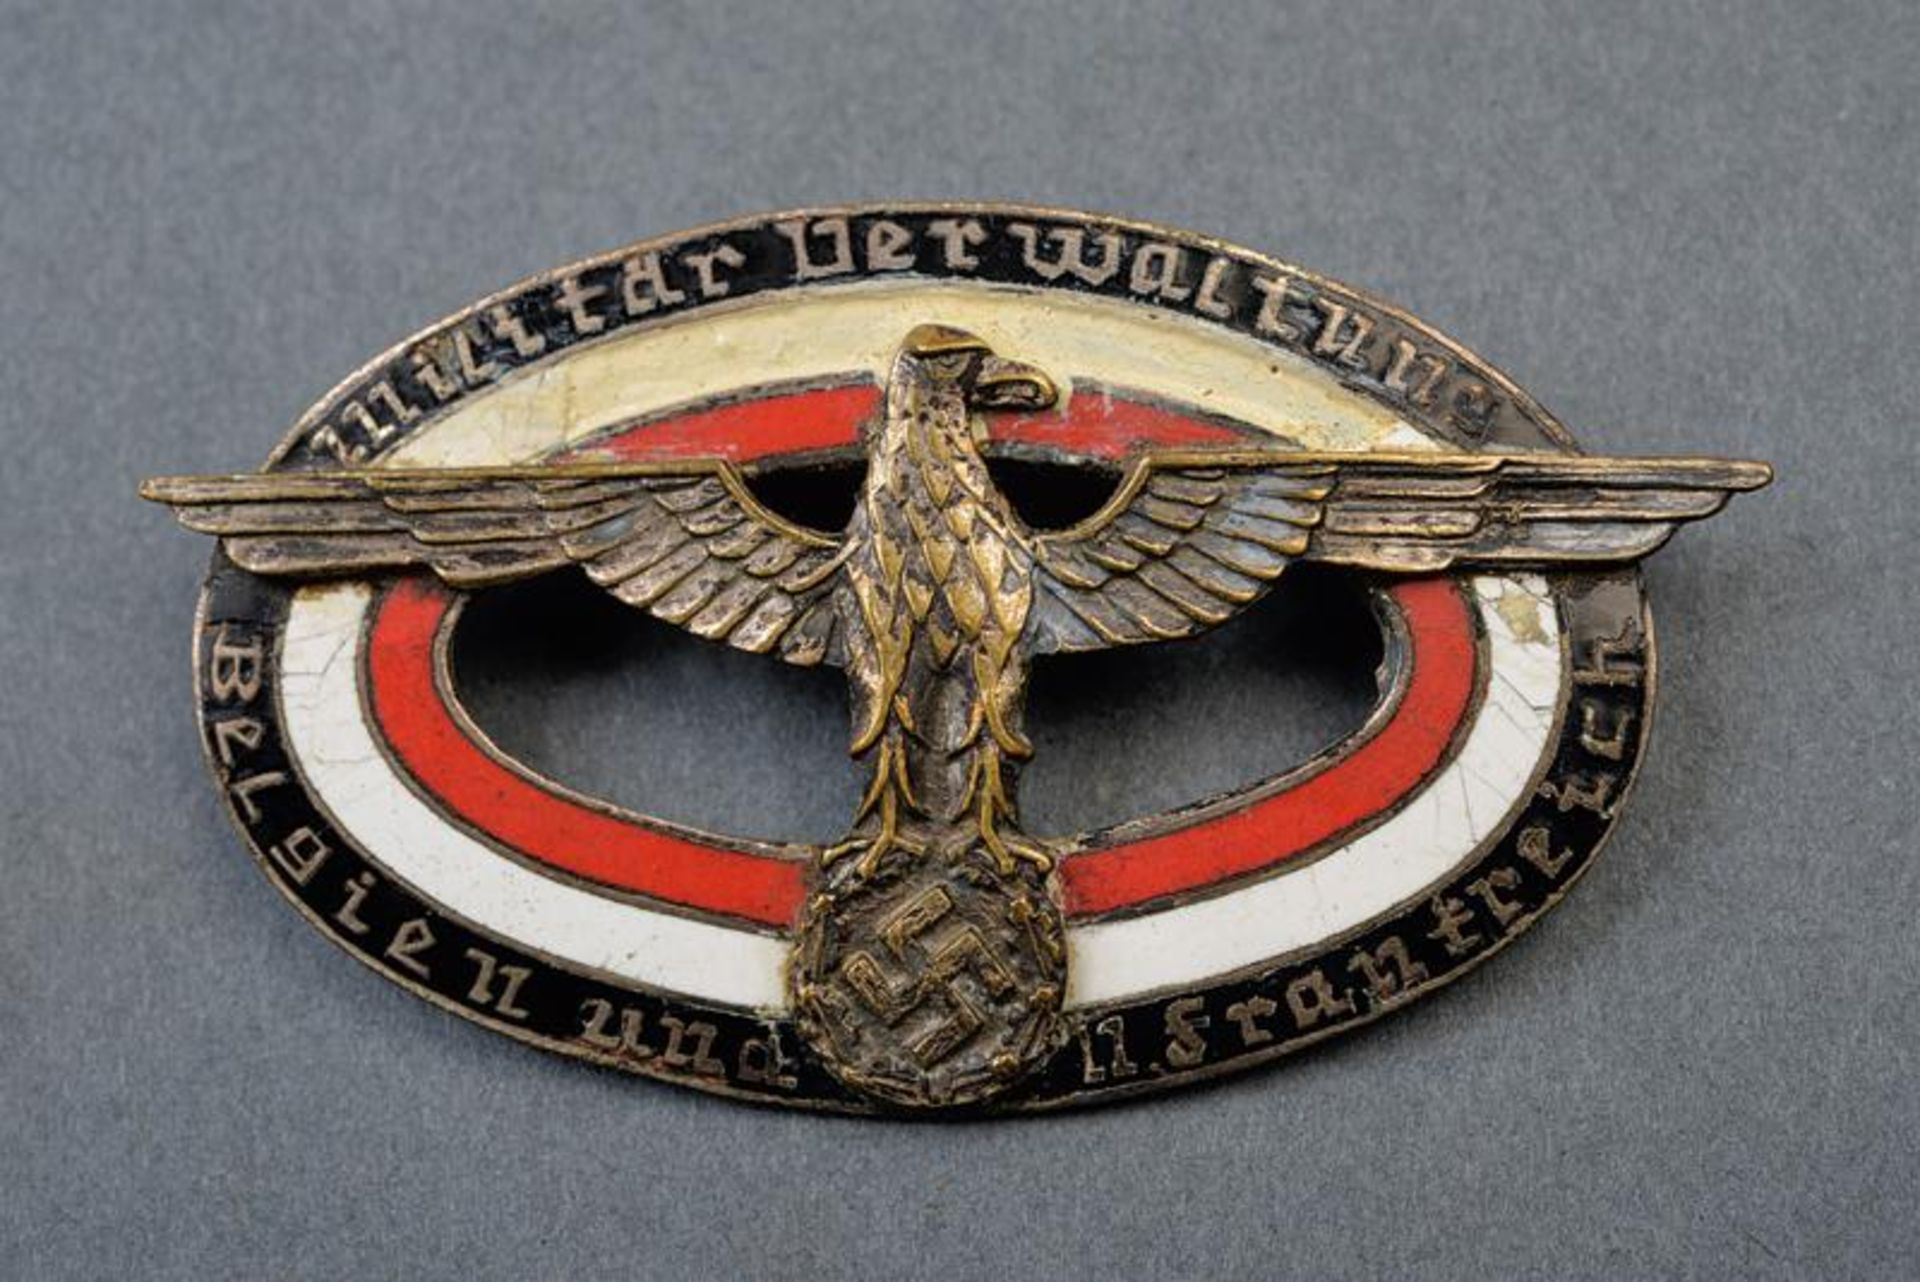 A 'Militärverwaltung Belgien und Frankreich' badge